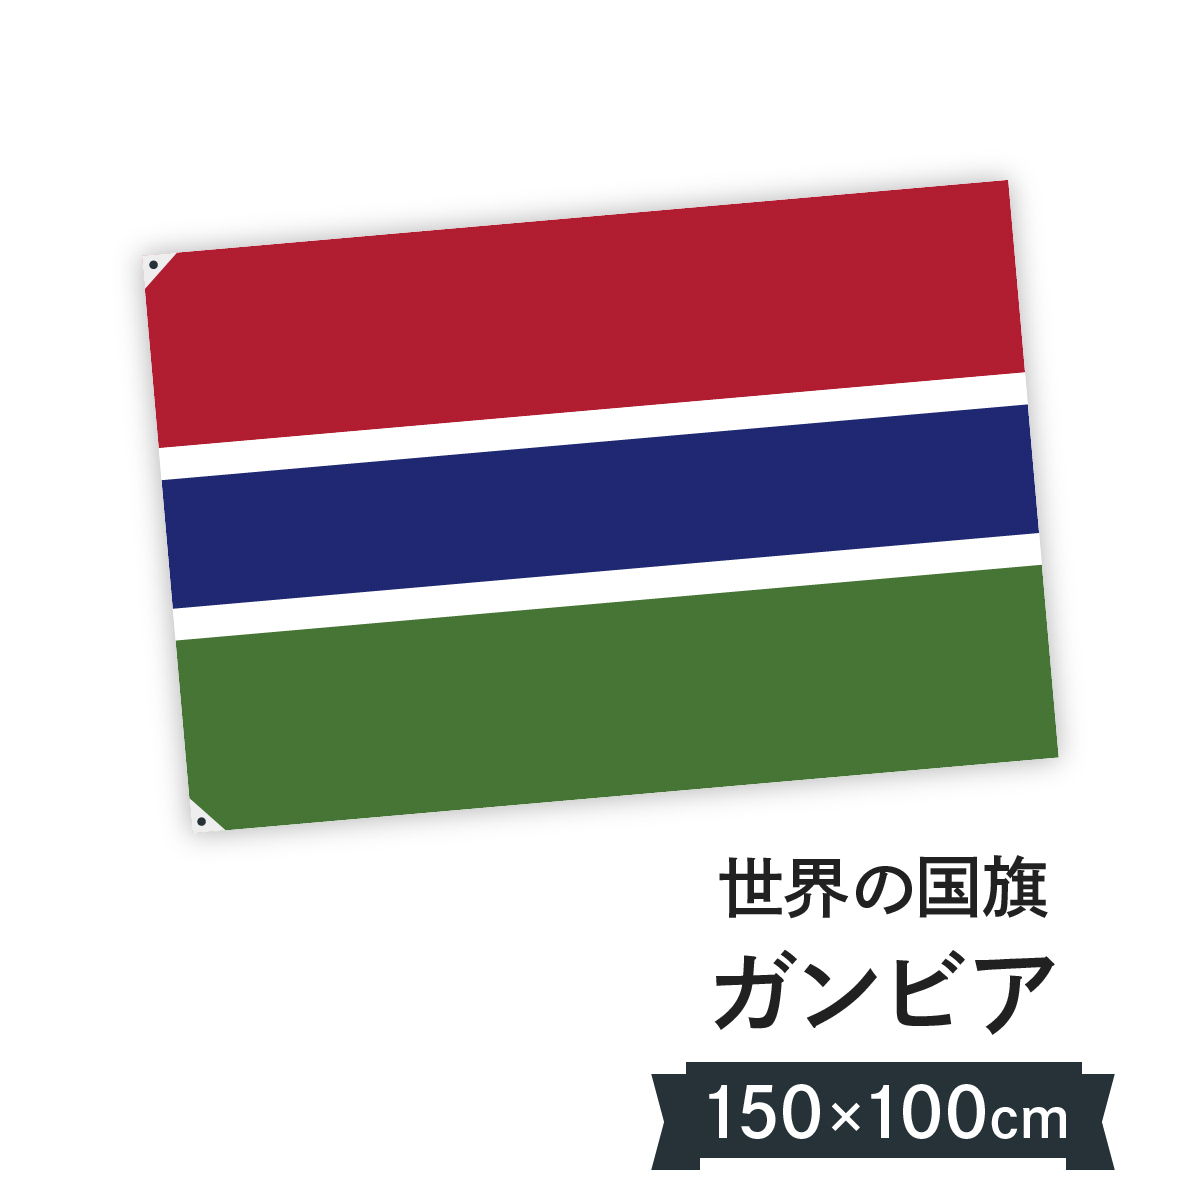 今年も話題の ガンビア共和国 H100cm W150cm 国旗 国旗 Rikk Dev Kaliber Is